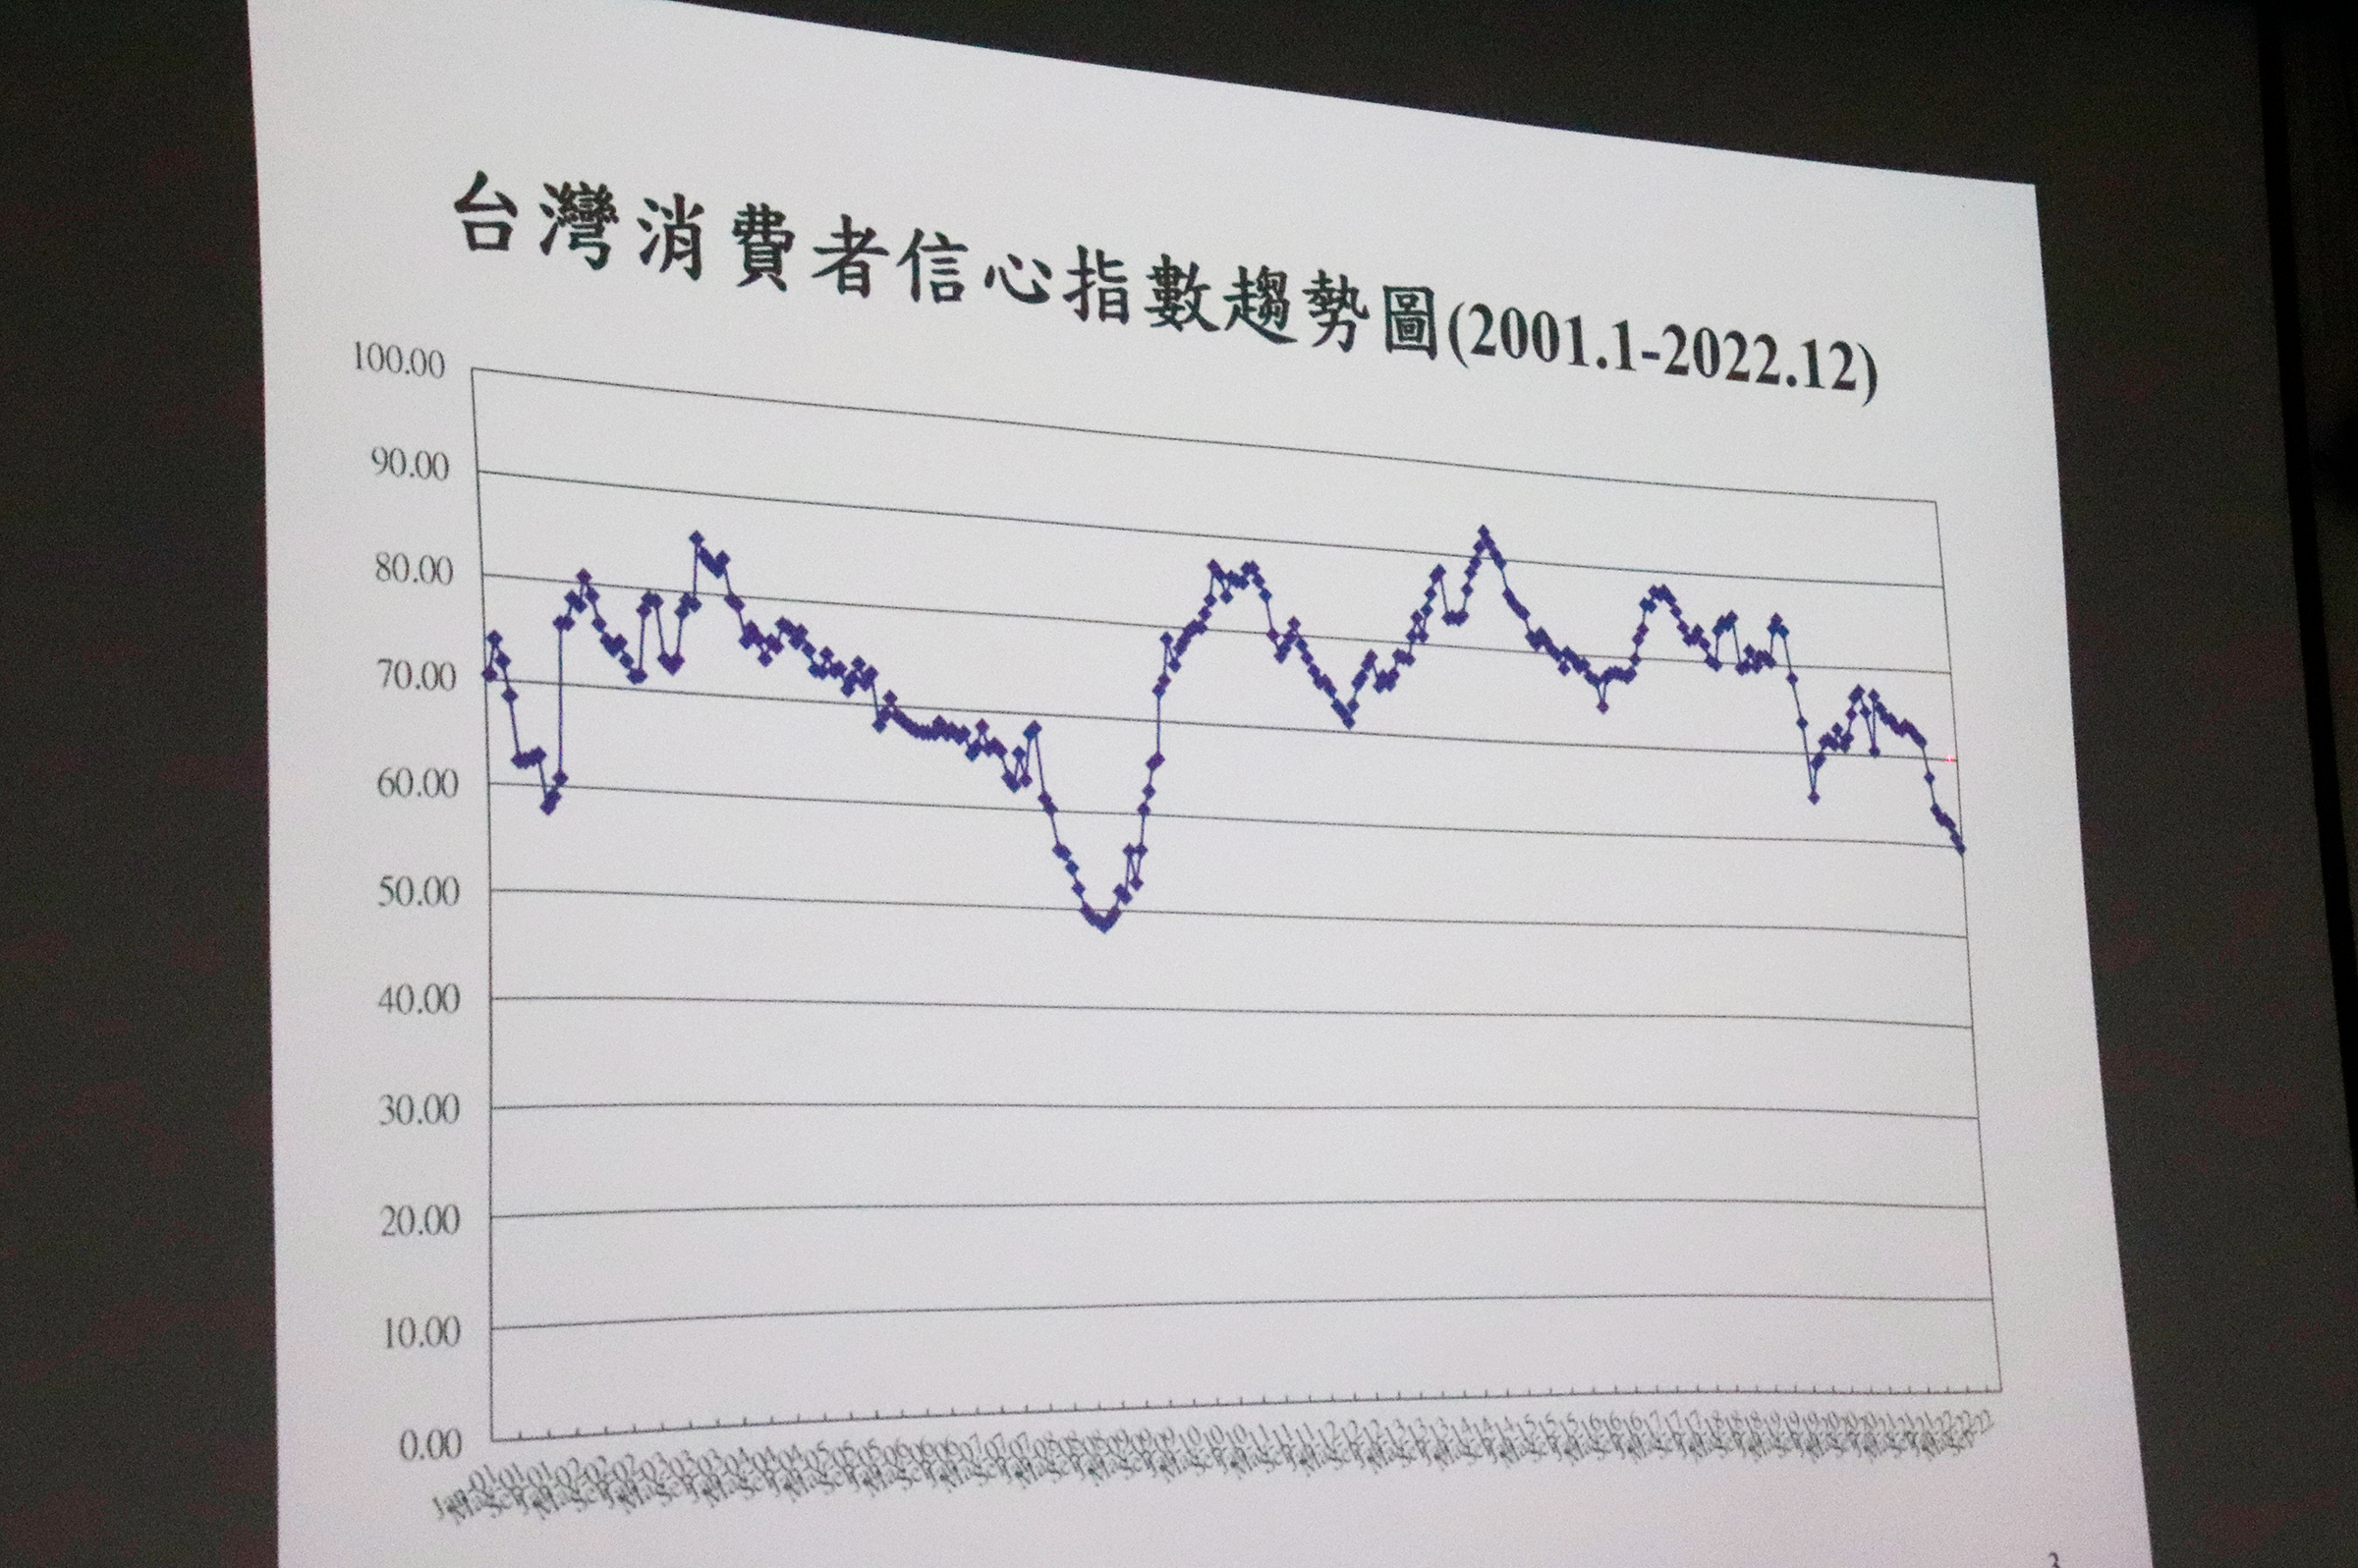 中央大學消費者信心指數從2001年發布開始，已有長達20年歷史，成為台灣經濟發展的重要指標。